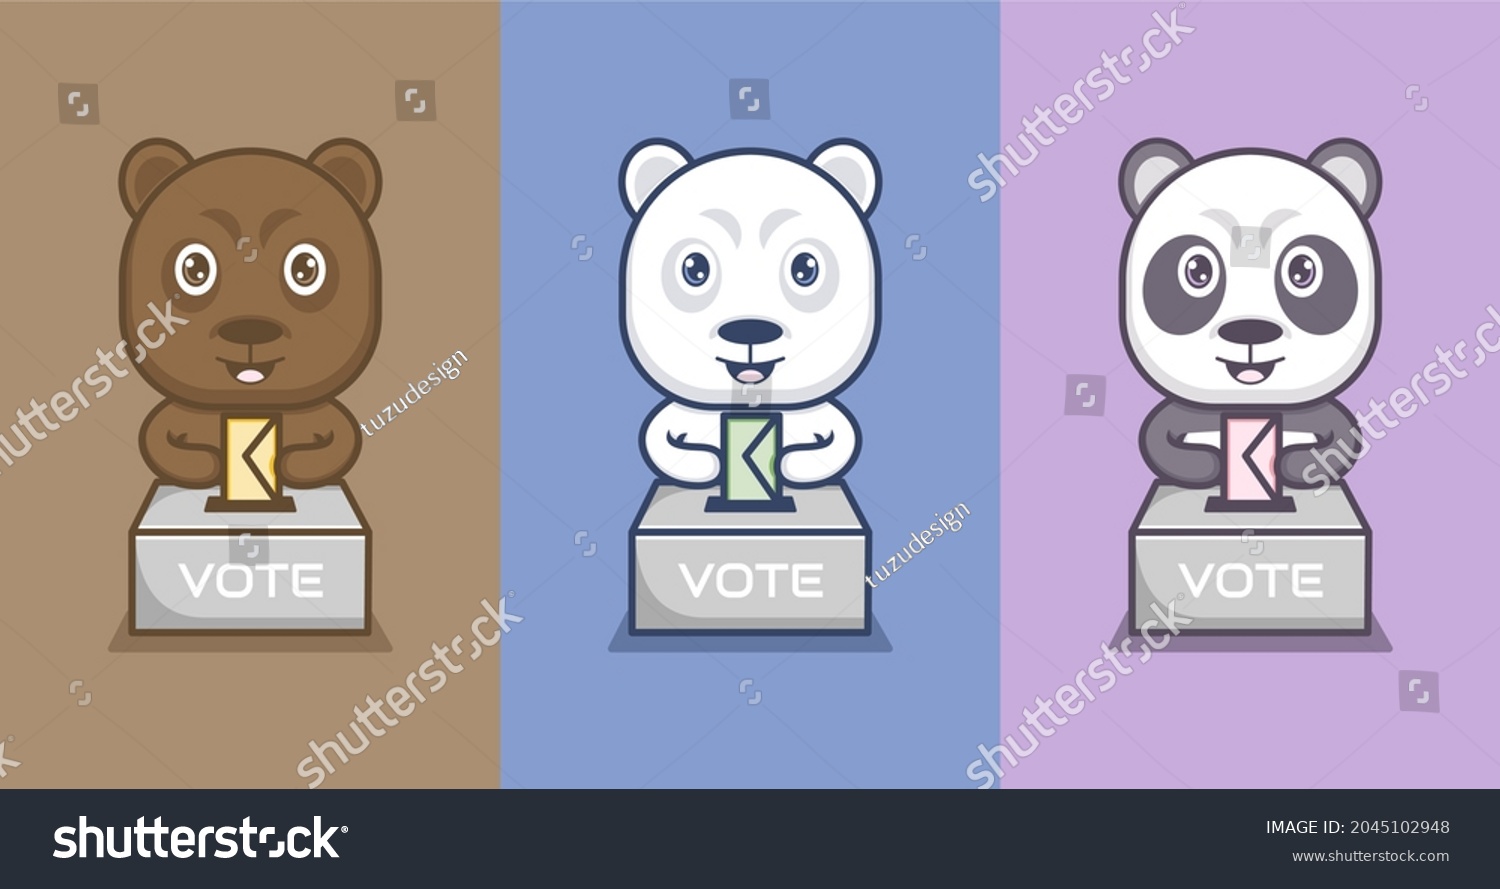 SVG of polar bear panda cute cartoon bear voting .vector illustration for mascot logo or sticker svg